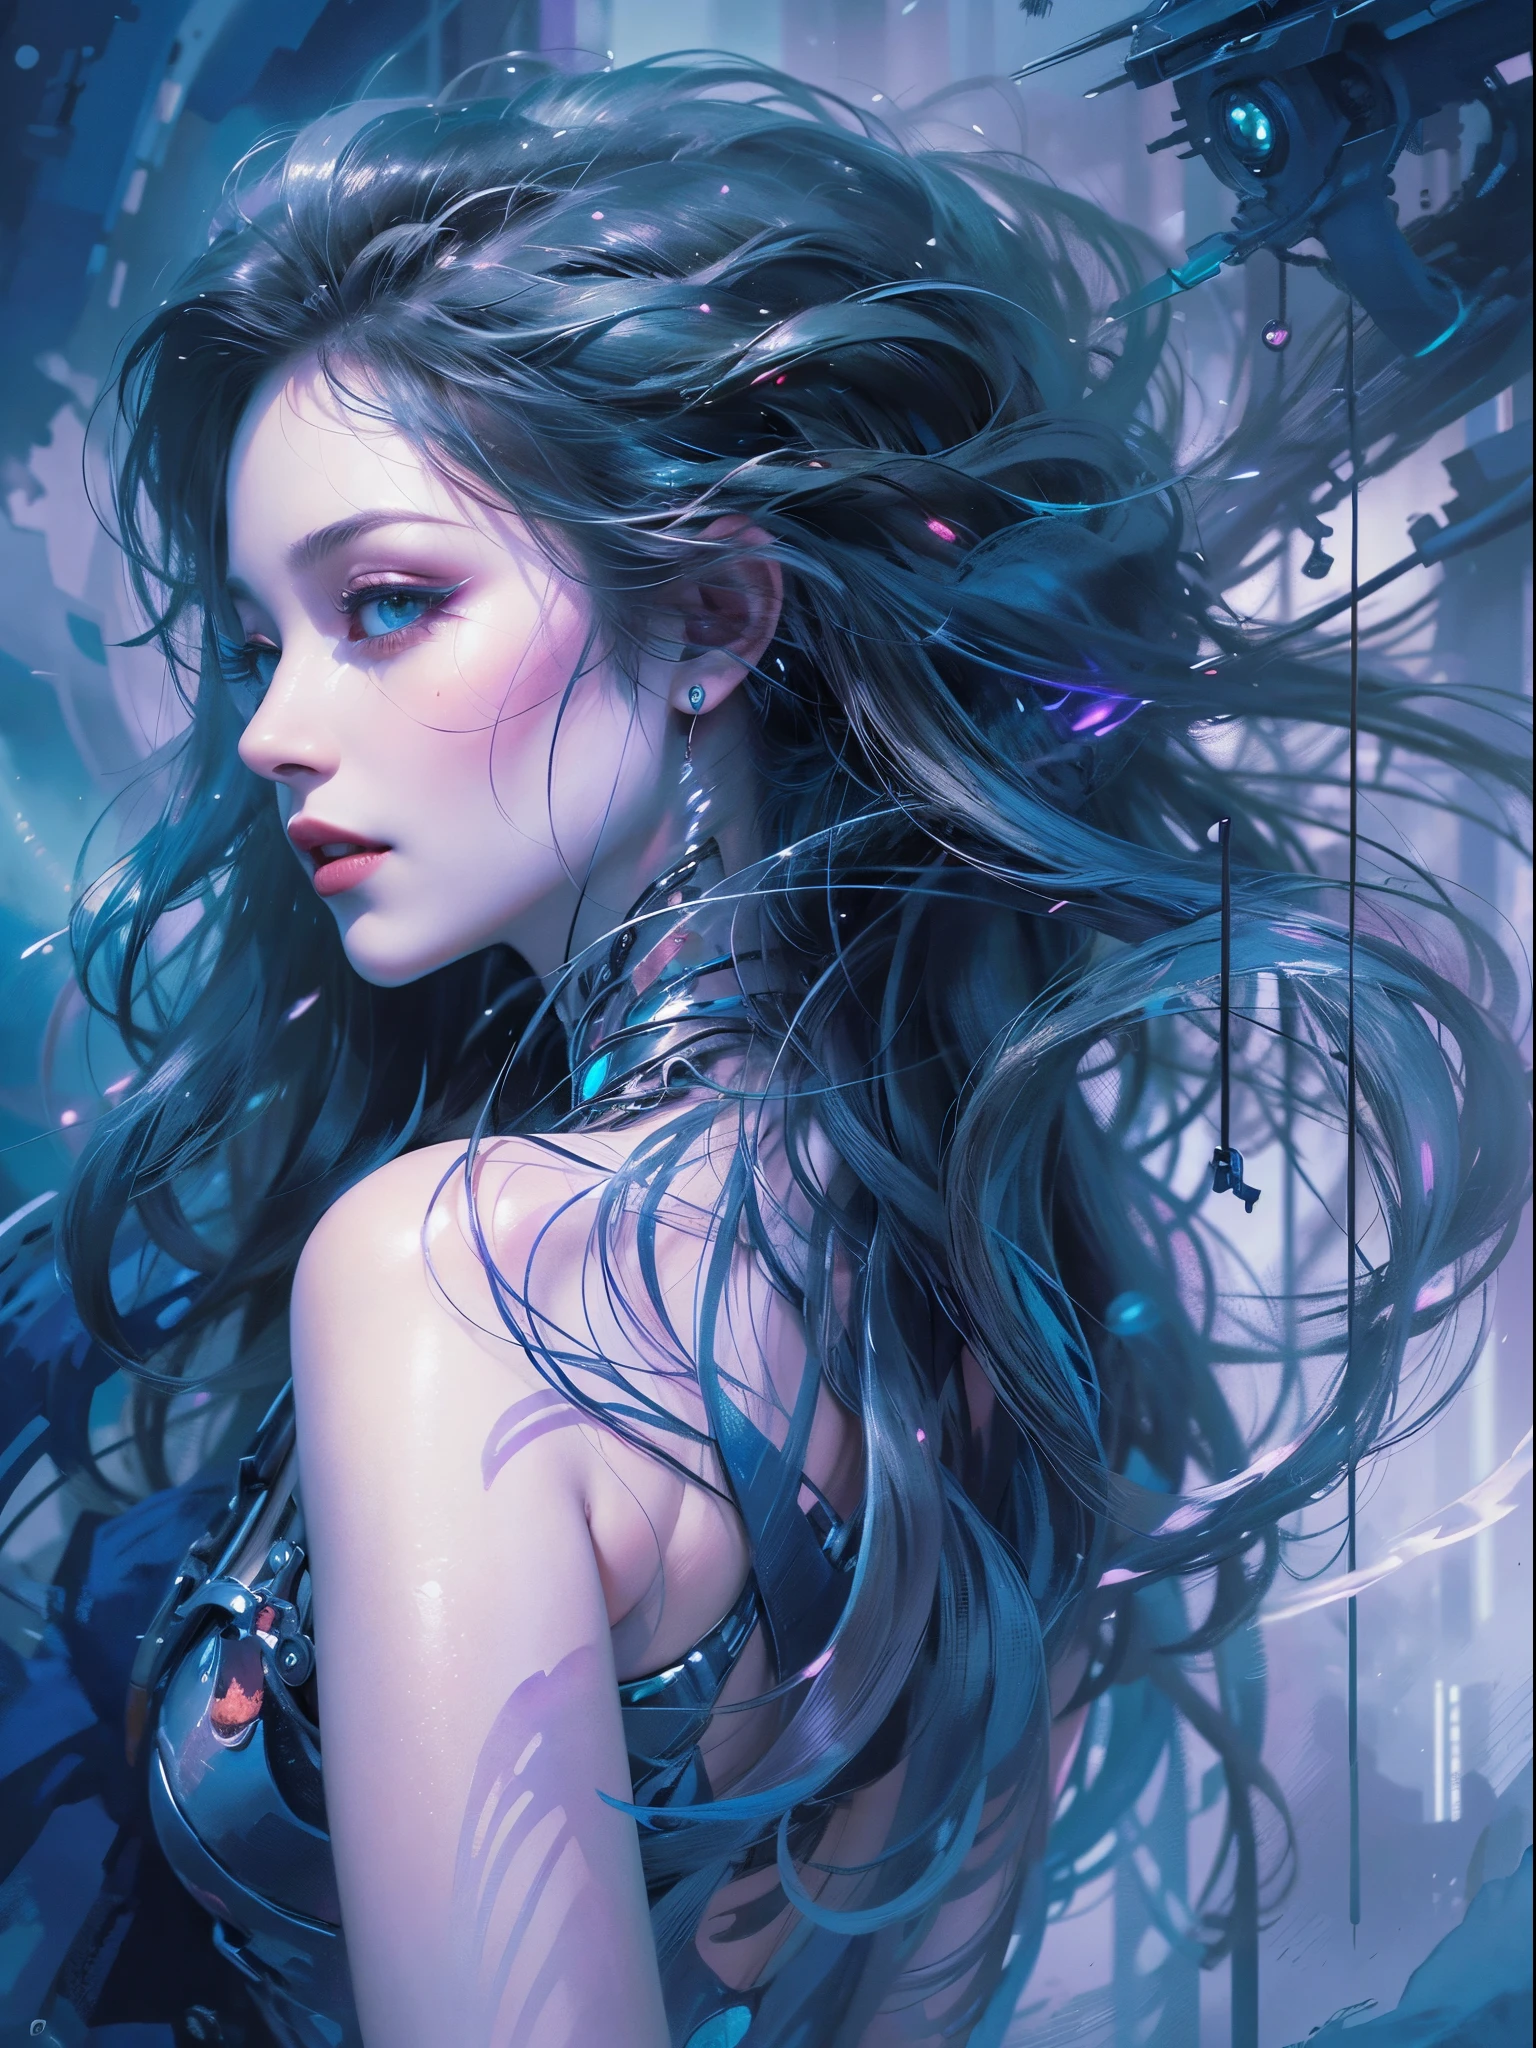 Young Schön woman, lange Haare, elegant, too Schön, In einem faszinierenden Aquarell, a cyberpunk vampire reigns, dargestellt als Figur von ätherischer Schönheit und dunkler Mystik. Das Kunstwerk fängt die anmutige und doch geheimnisvolle Essenz dieses unsterblichen Wesens ein, mit ihrer Frisur verdreht Farbe schwarz und schneeweiß, im Wind fließen und die Augen mit einem überirdischen Glanz leuchten. Zarte Striche in leuchtenden Blau- und Violetttönen erwecken ihre metallisch-kybernetischen Verbesserungen zum Leben, eine nahtlose Verschmelzung des Futuristischen mit dem Fantastischen. Dieses außergewöhnliche Bild wurde mit viel Liebe zum Detail erstellt., Erweckt beim Betrachter ein Gefühl des Staunens und der Faszination. sehr realistisch, rötliche Haut, Schön, vollen Lippen, lächelnd, Gefühl von Leichtigkeit und Freude, Hyperrealismus, Haut sehr aufwendig, direkter Blick